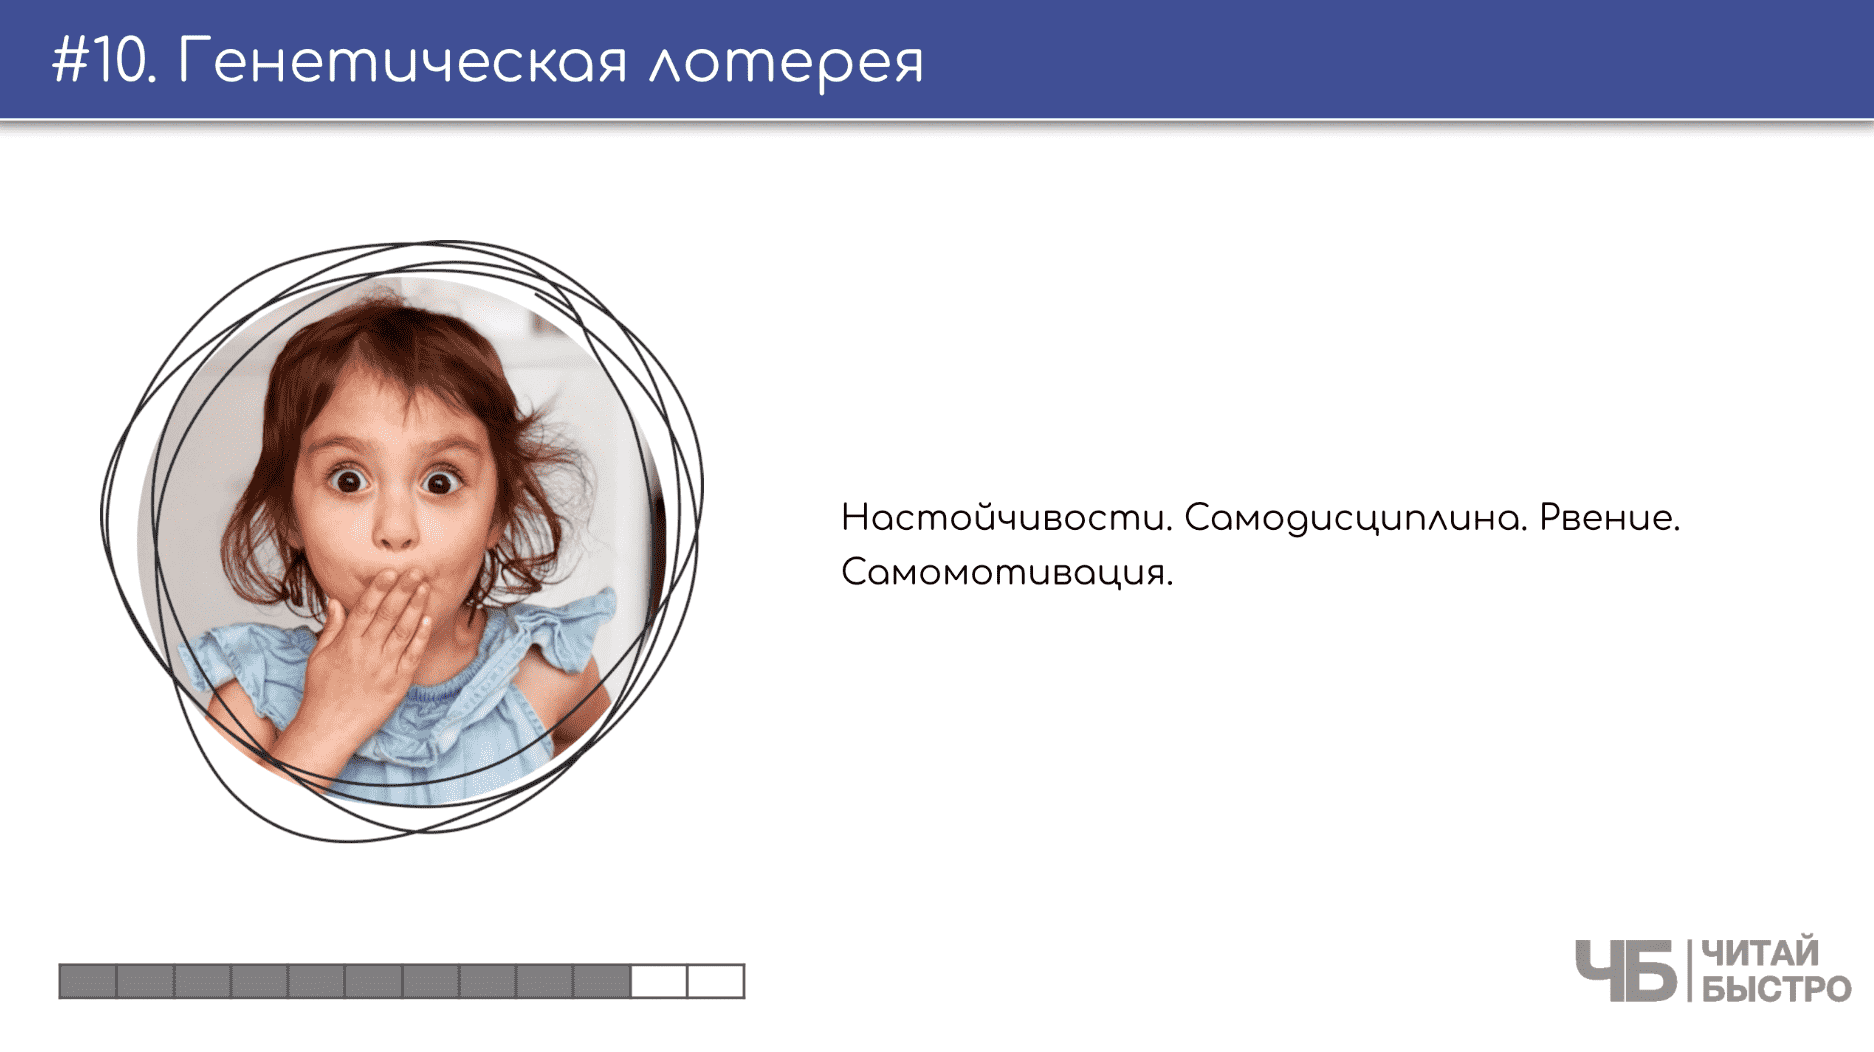 На этом слайде изображен тезис о генетической лотерее и иллюстрация ребенка.